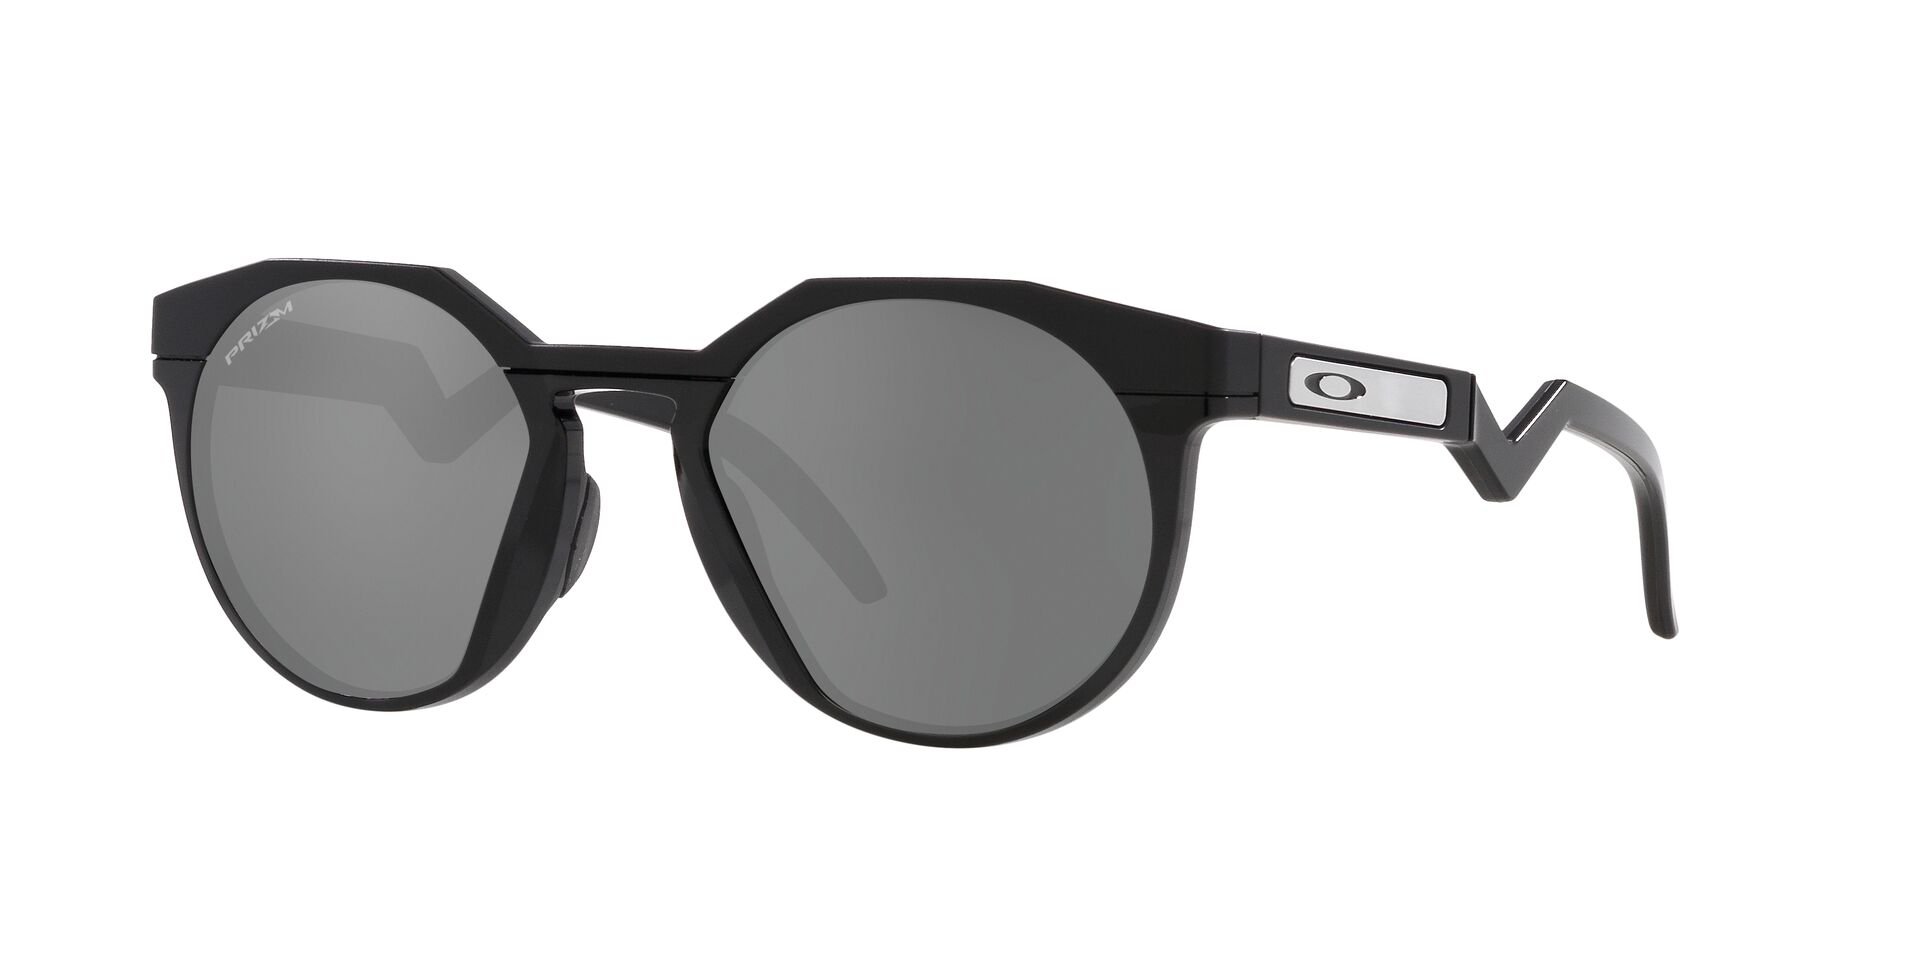 Das Bild zeigt die Sonnenbrille OO9242 924201 von der Marke Oakley in  schwarz.